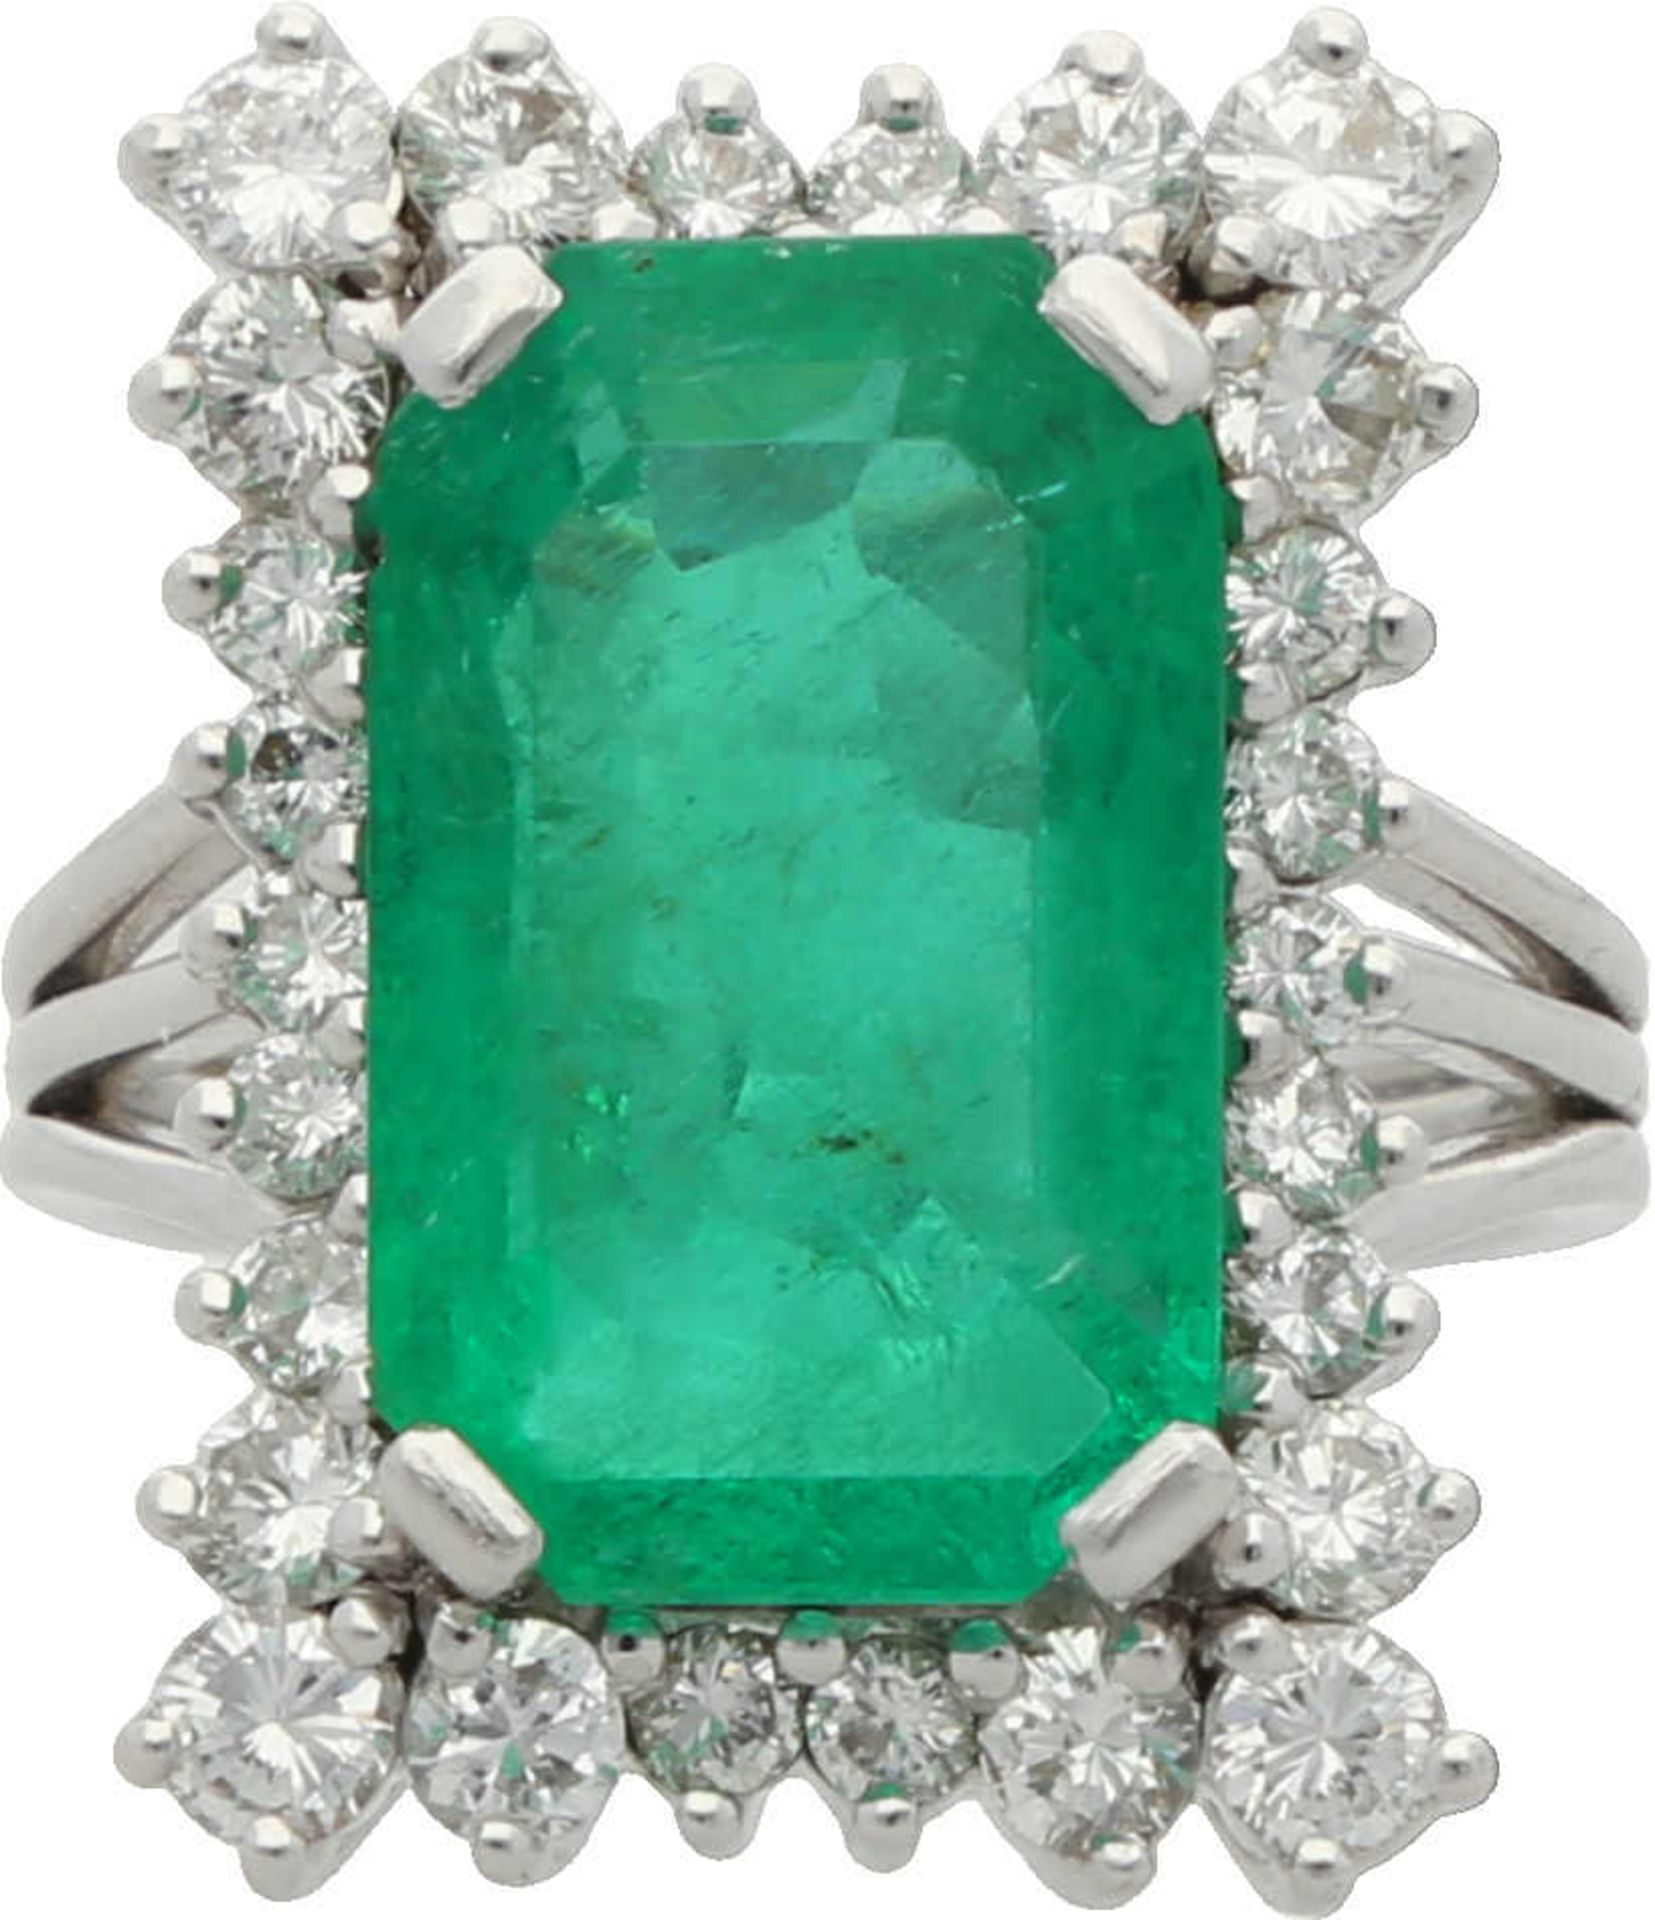 Smaragd-Brillant-Ring Cocktail-Ring in Platin 950 mit einem sehr schönen, kolumbianischen Smaragd